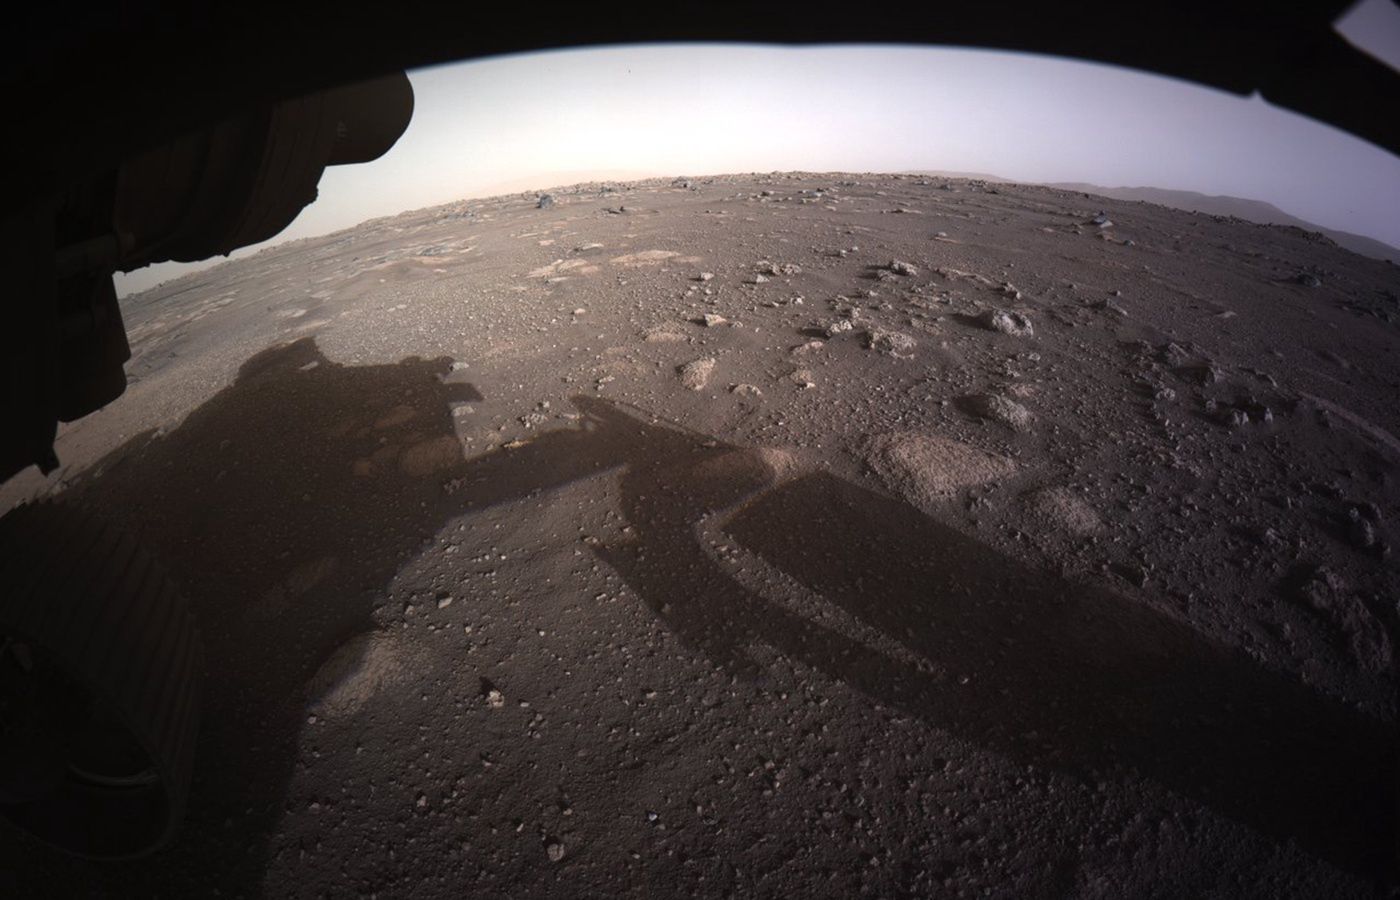 Łazik Perseverance przesłał nowe zdjęcia Marsa w kolorze